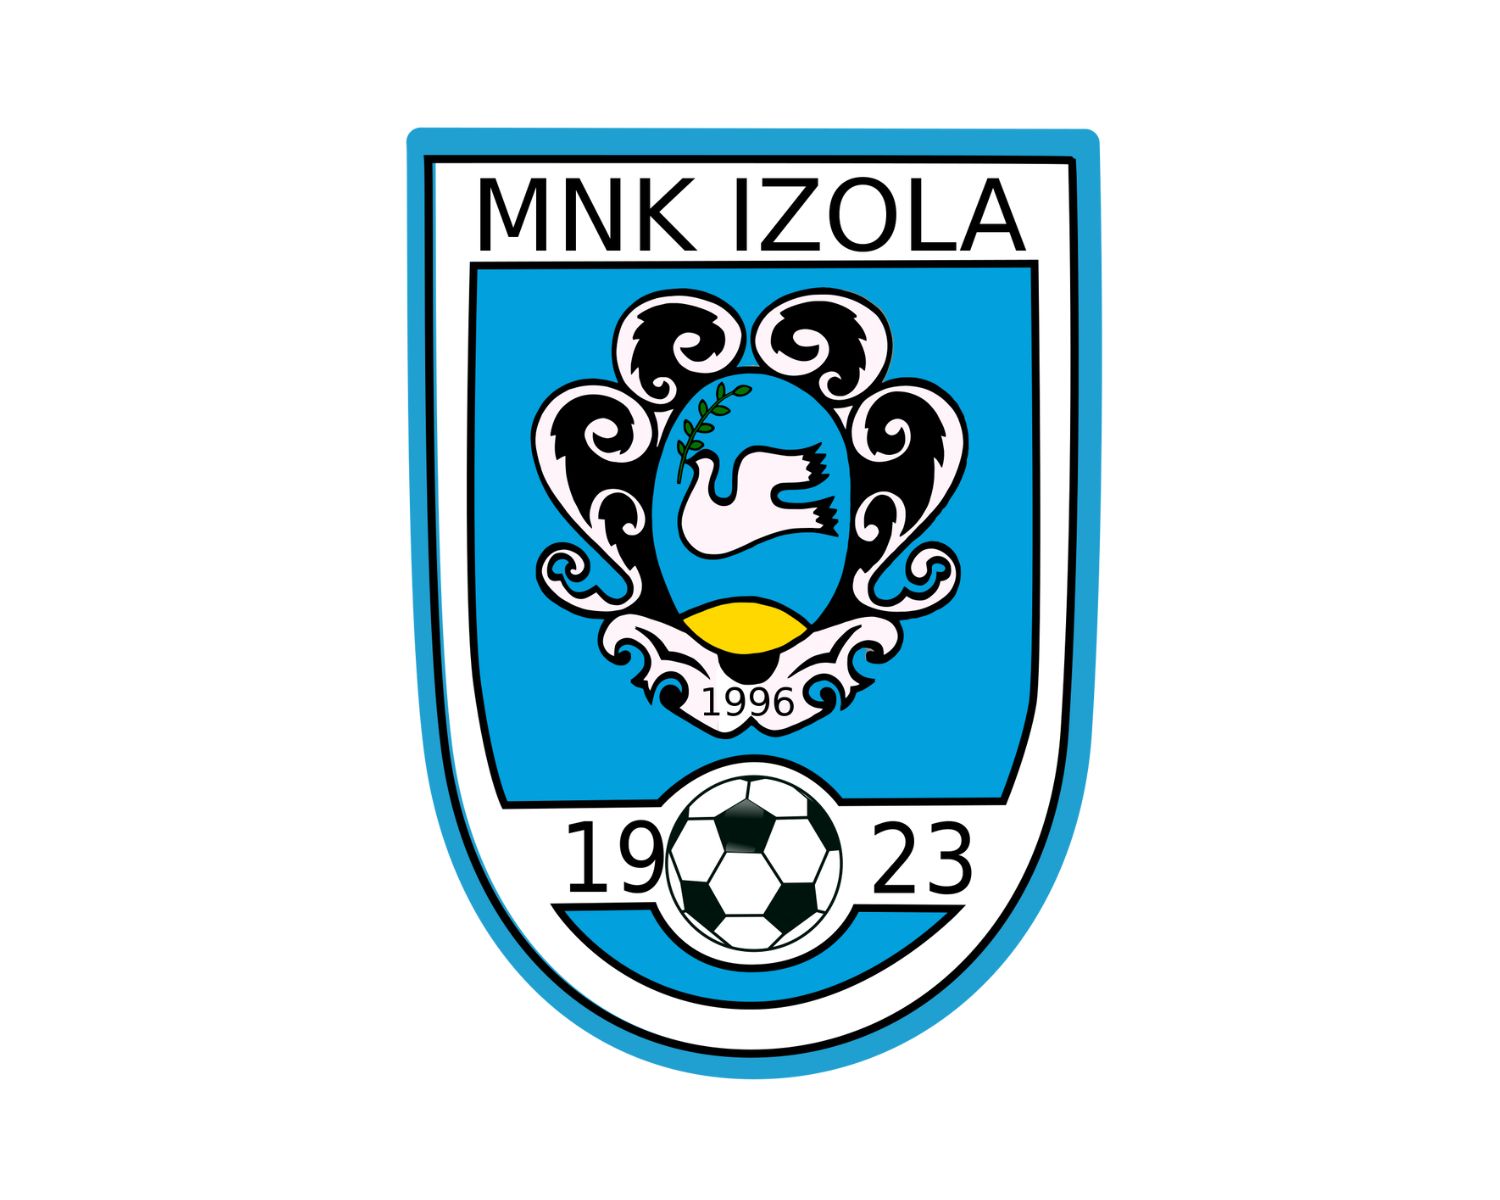 mnk-izola-24-football-club-facts